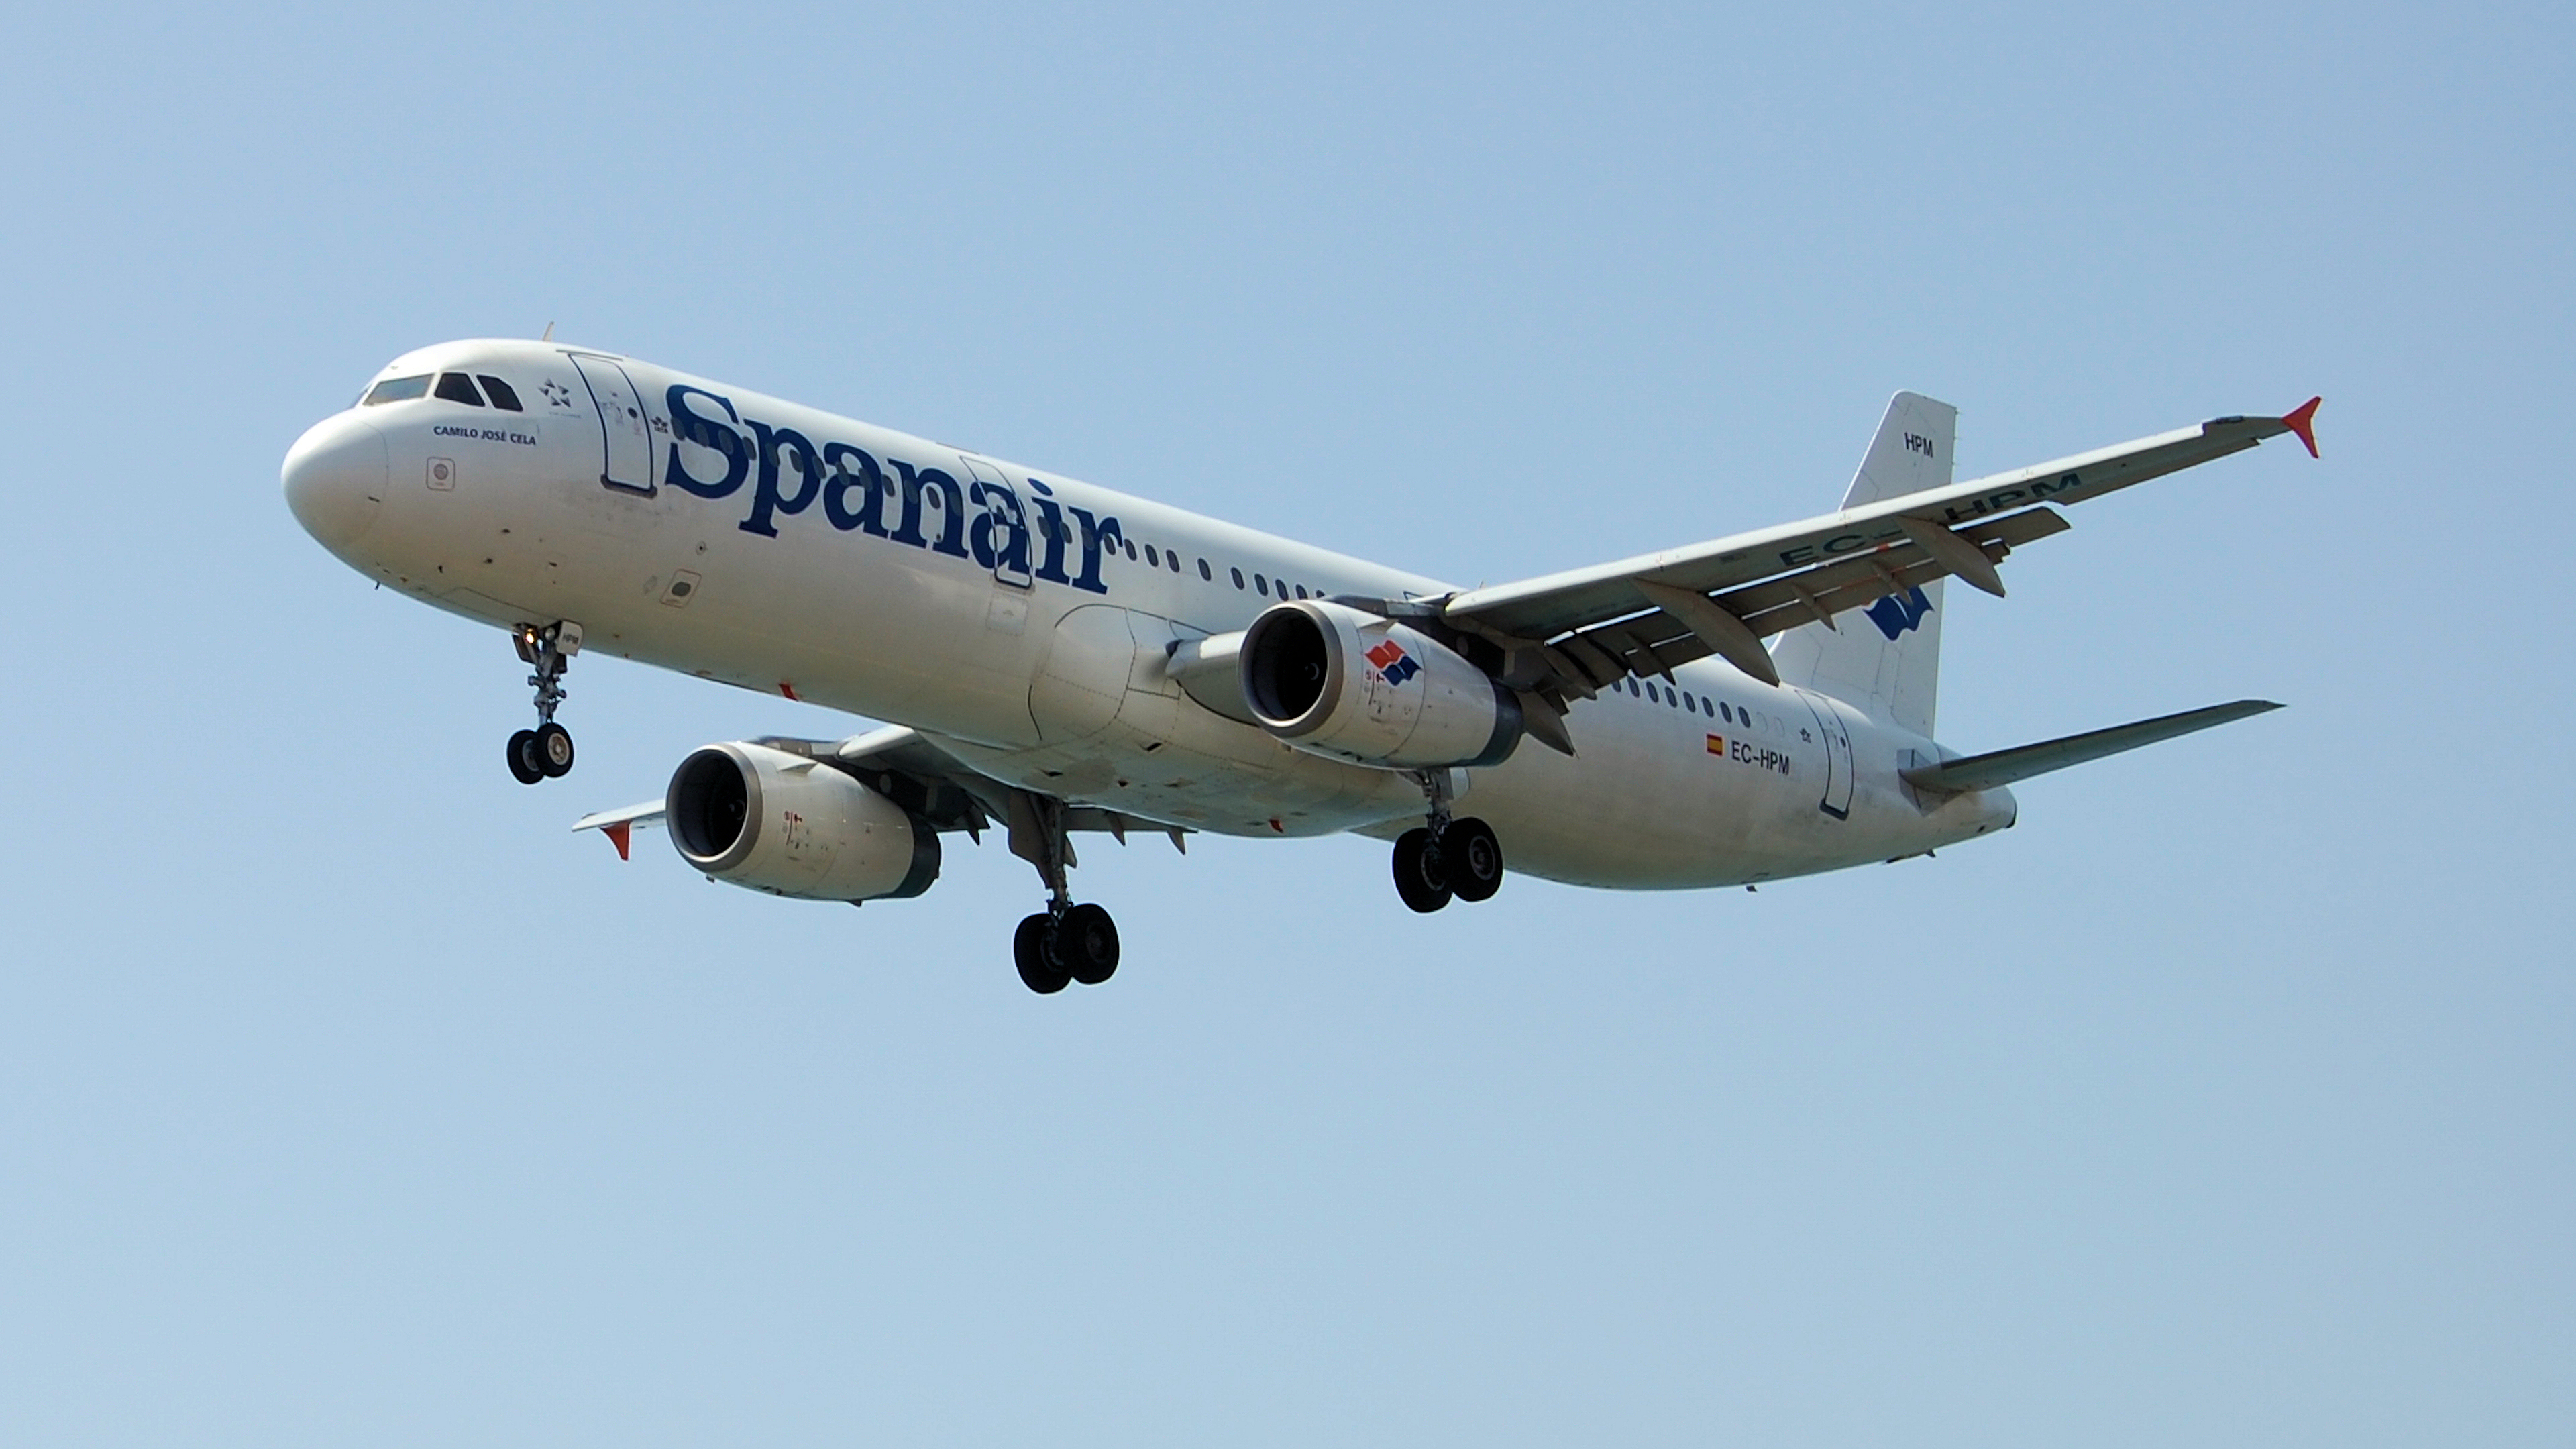 Spanair Airbus A321-231 -  EC-HPM by Manufan63